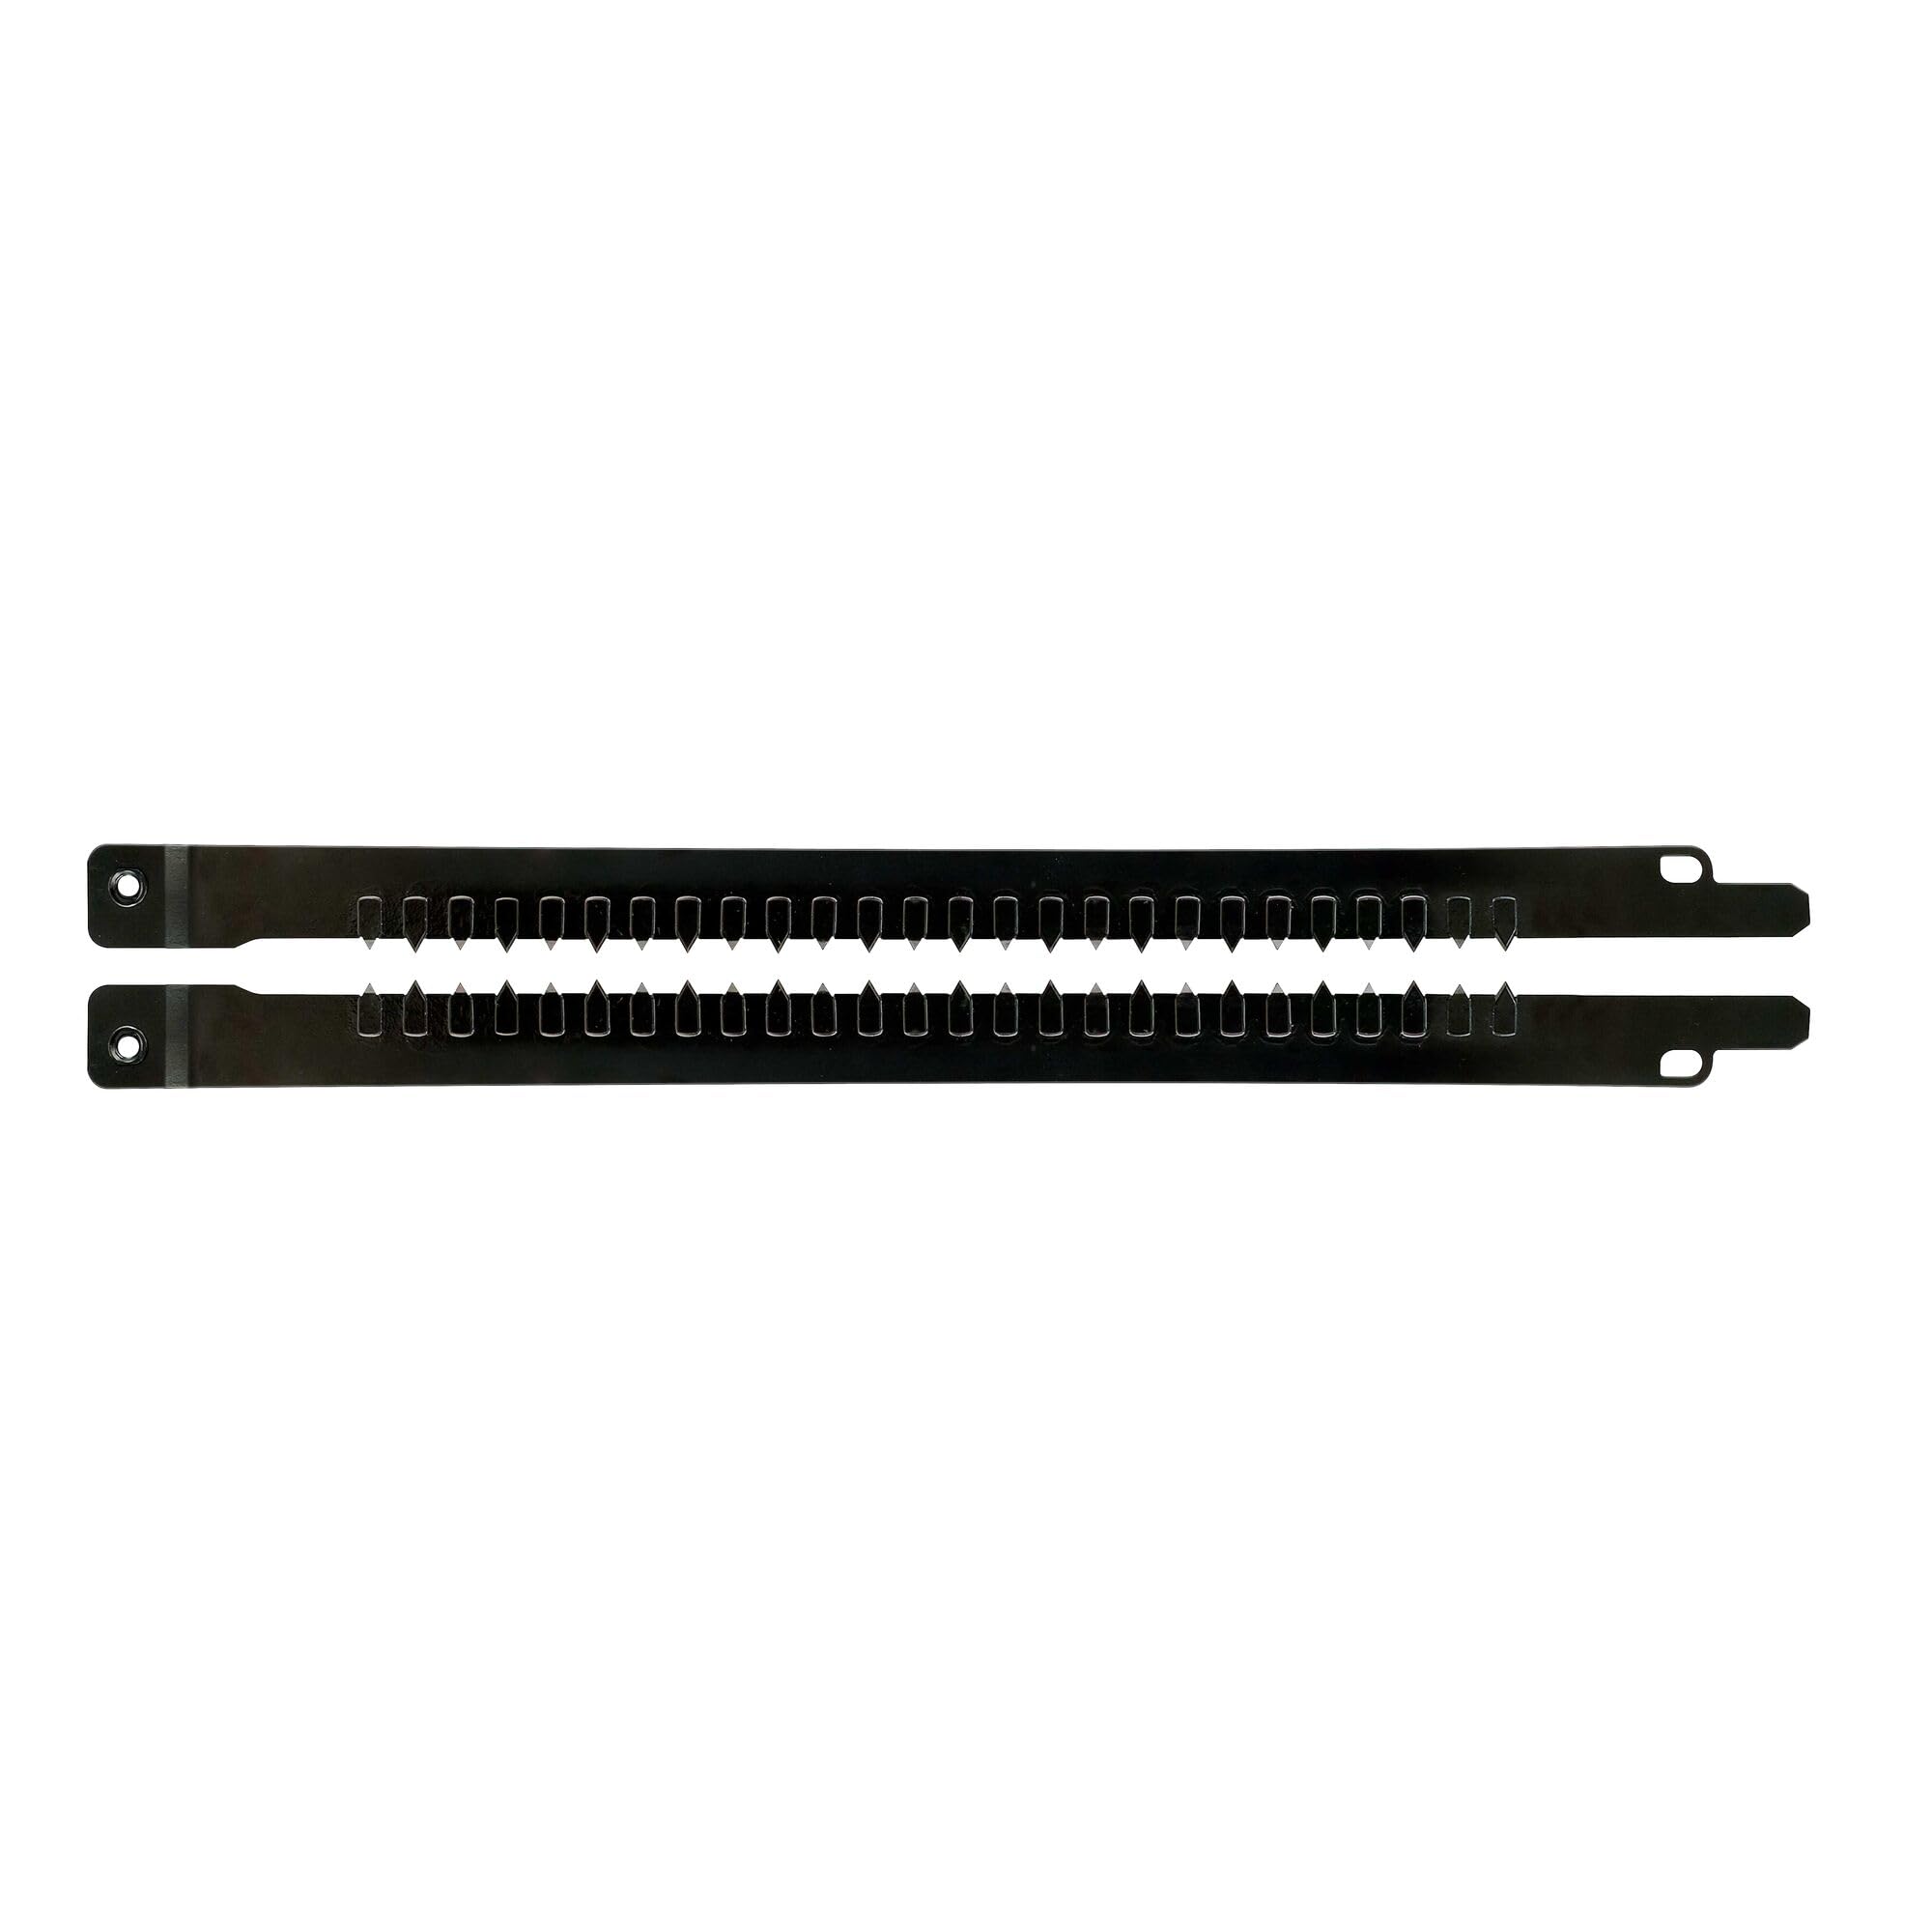 DeWalt Hoja de sierra Alligator TCT de 295mm de longitud para el corte de bloque y termoarcilla (POROTON) clase 20